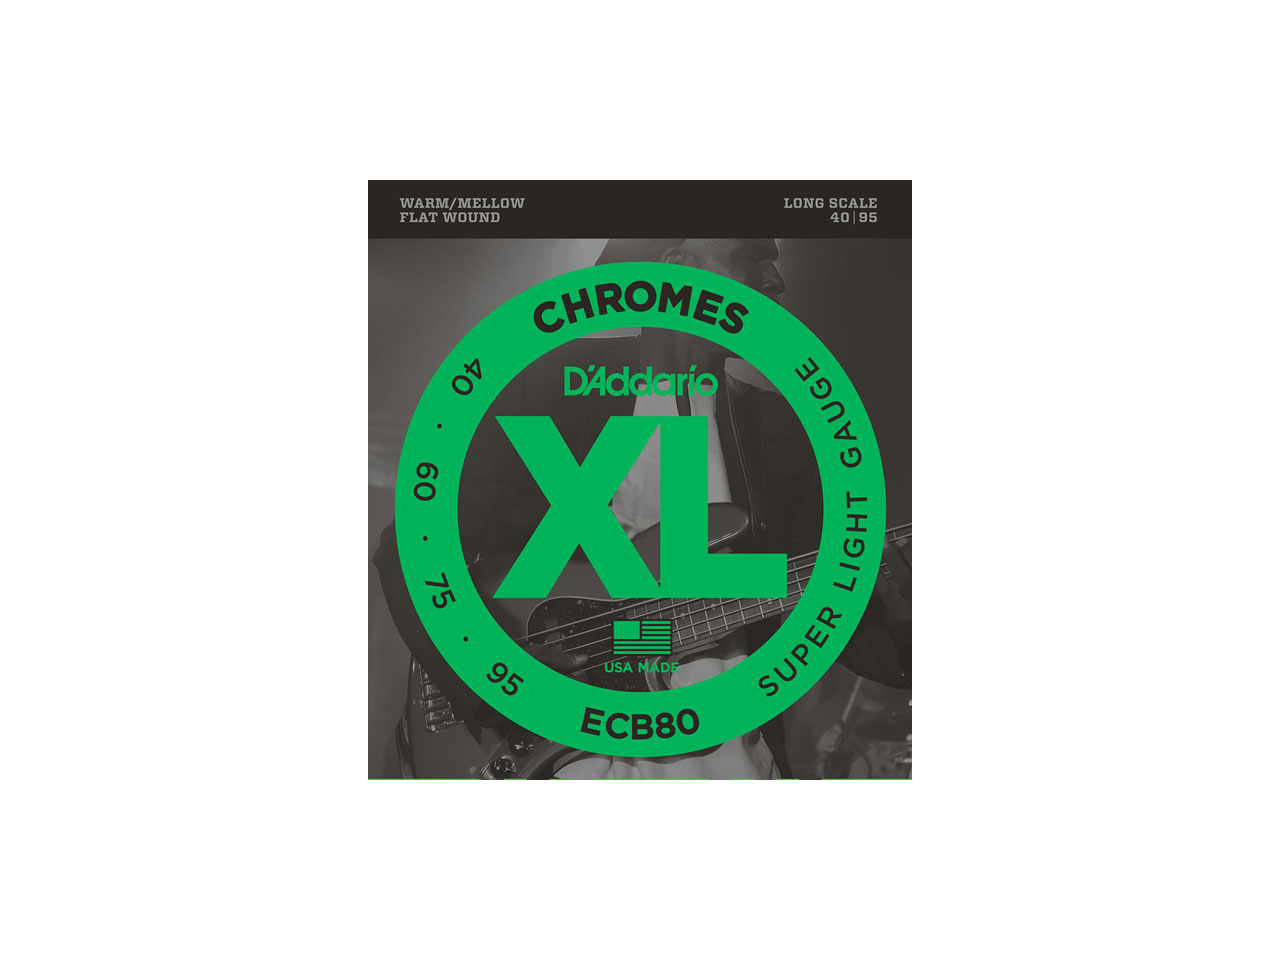 D'Addario(ダダリオ) XL Chromes Flat Wound , Long Scale , Super Light / ECB80 (エレキベース弦)